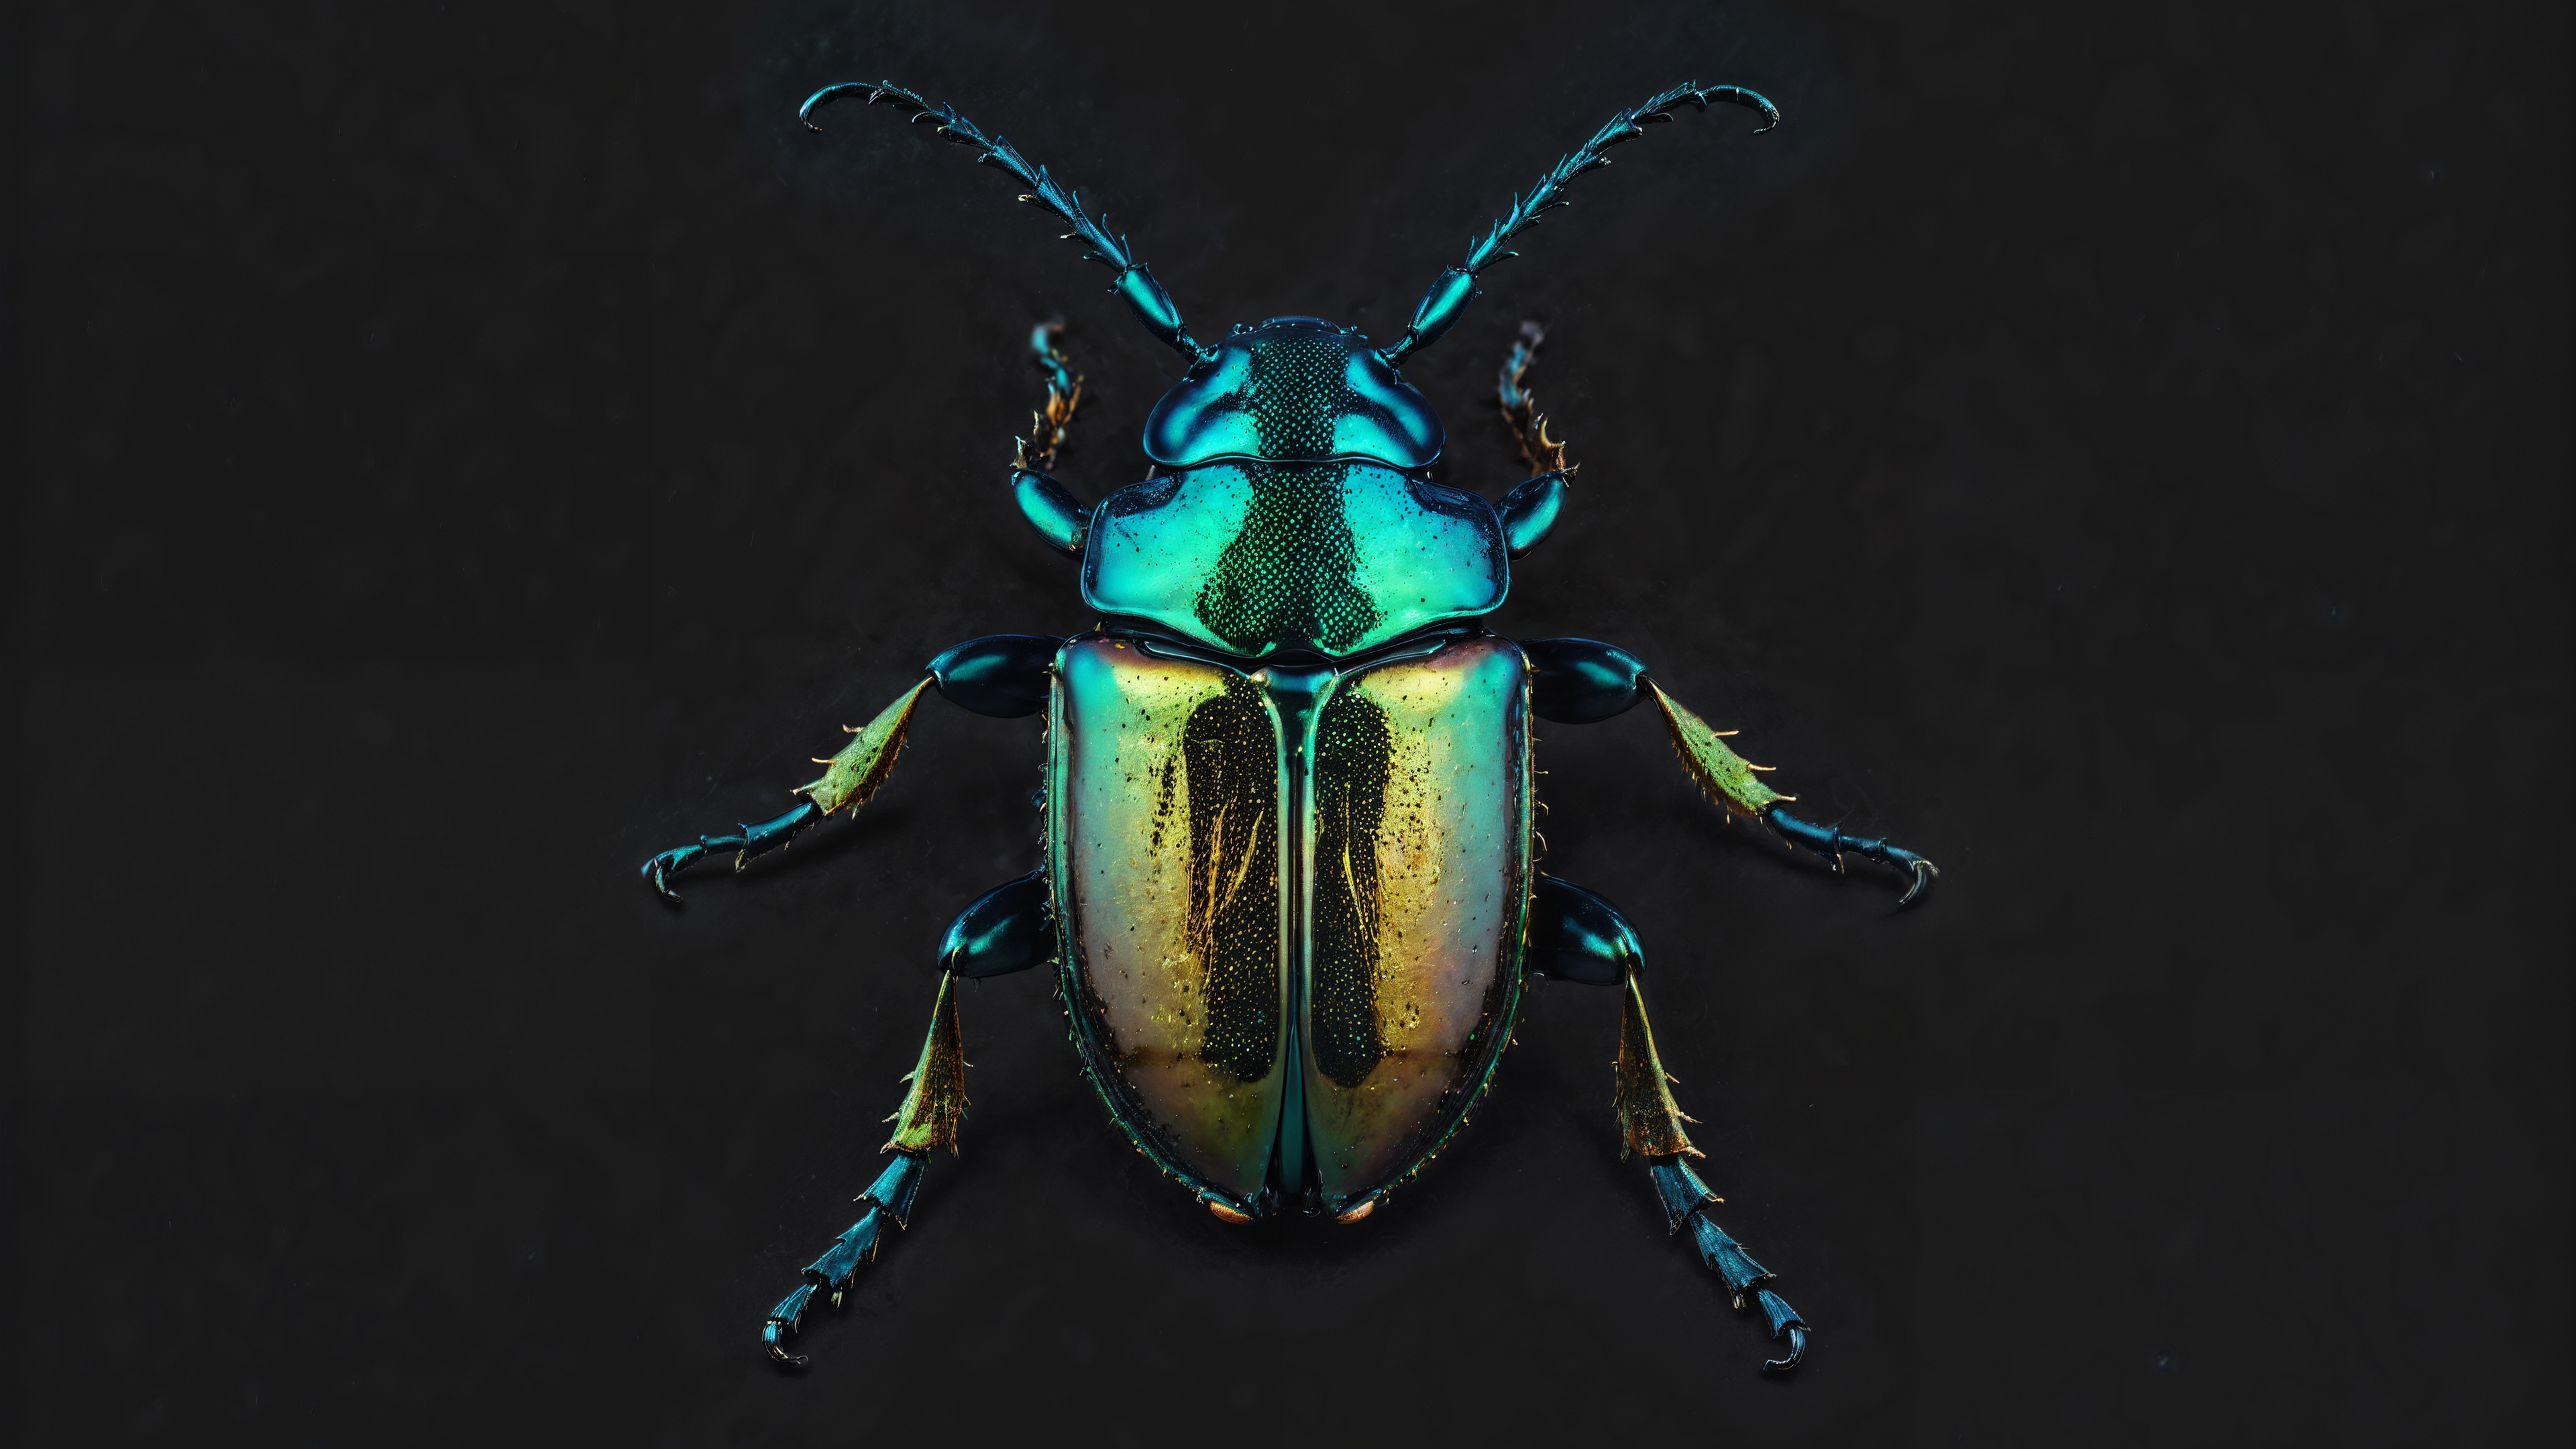 免费照片照片中可以看到一只绿色的大甲虫